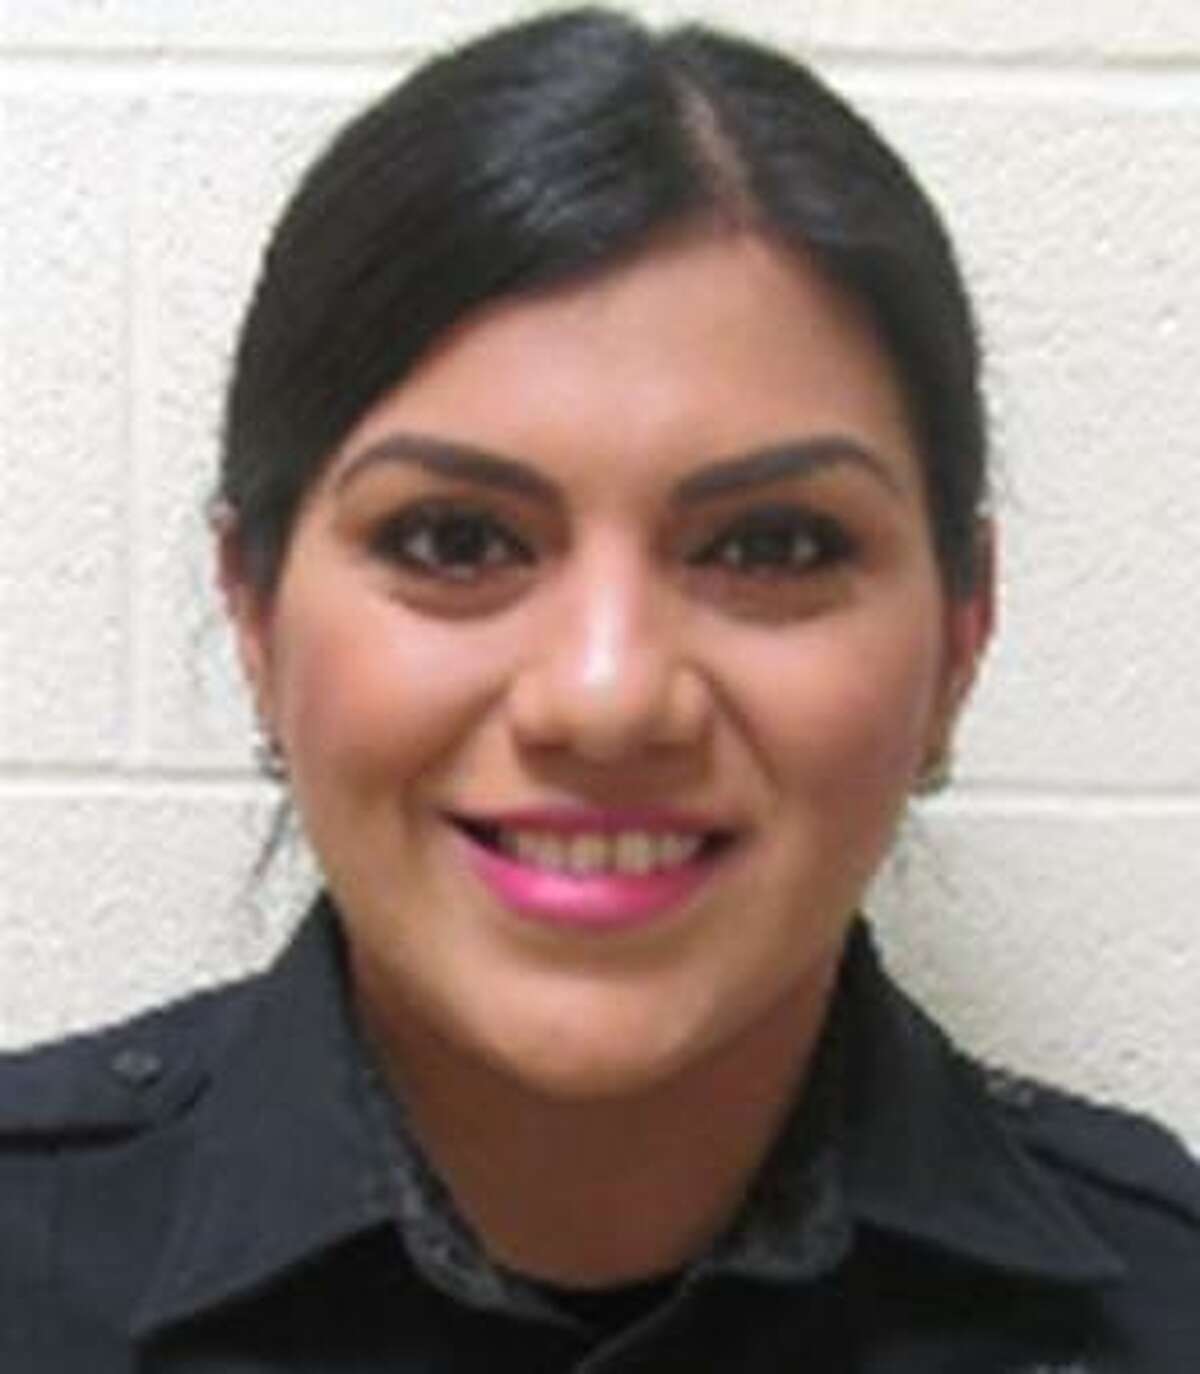 Deputy Rita Alvarez